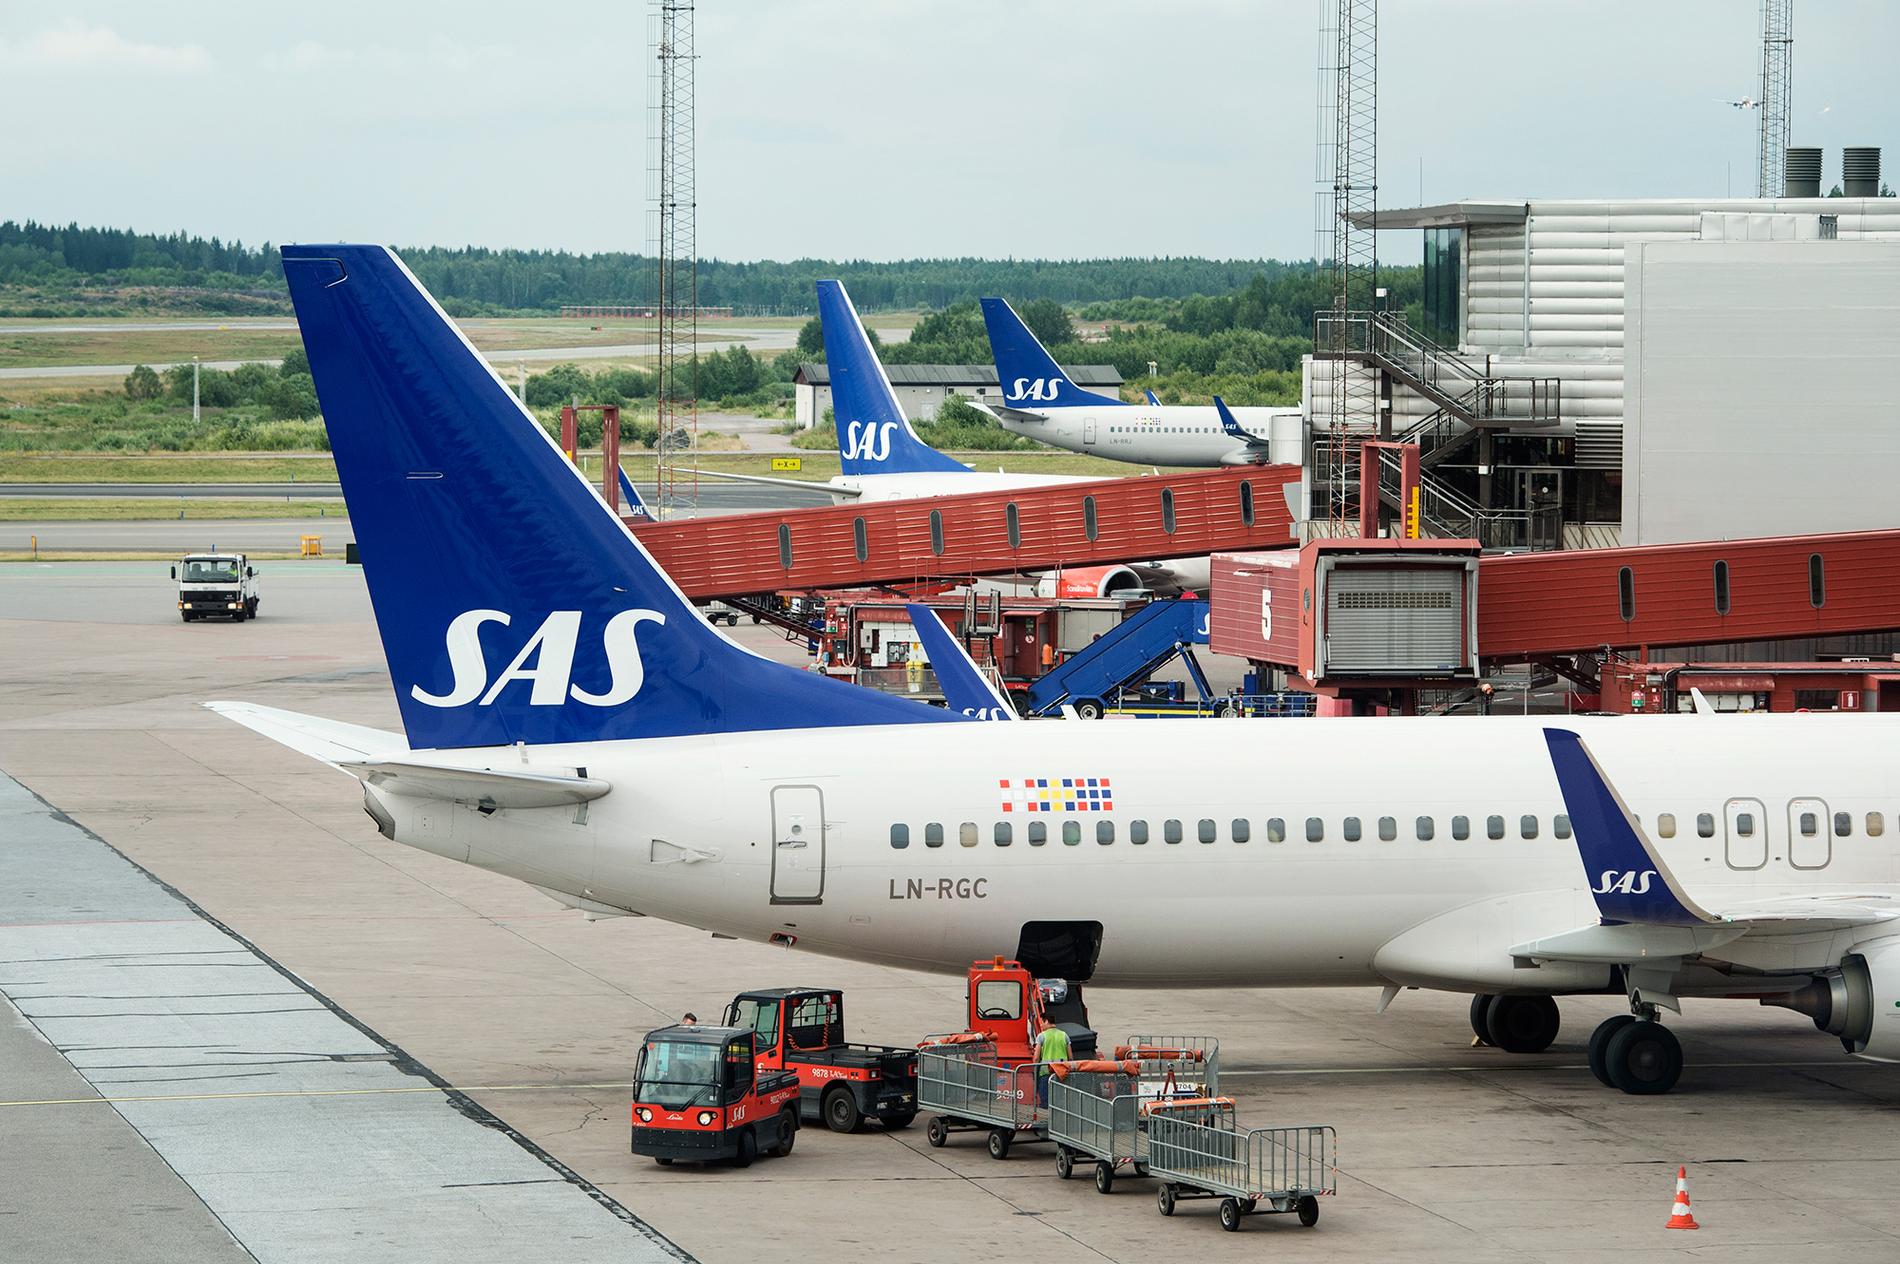 En ny undersökning pekar på uselt arbetsklimat för SAS kabinpersonal i Stockholm.